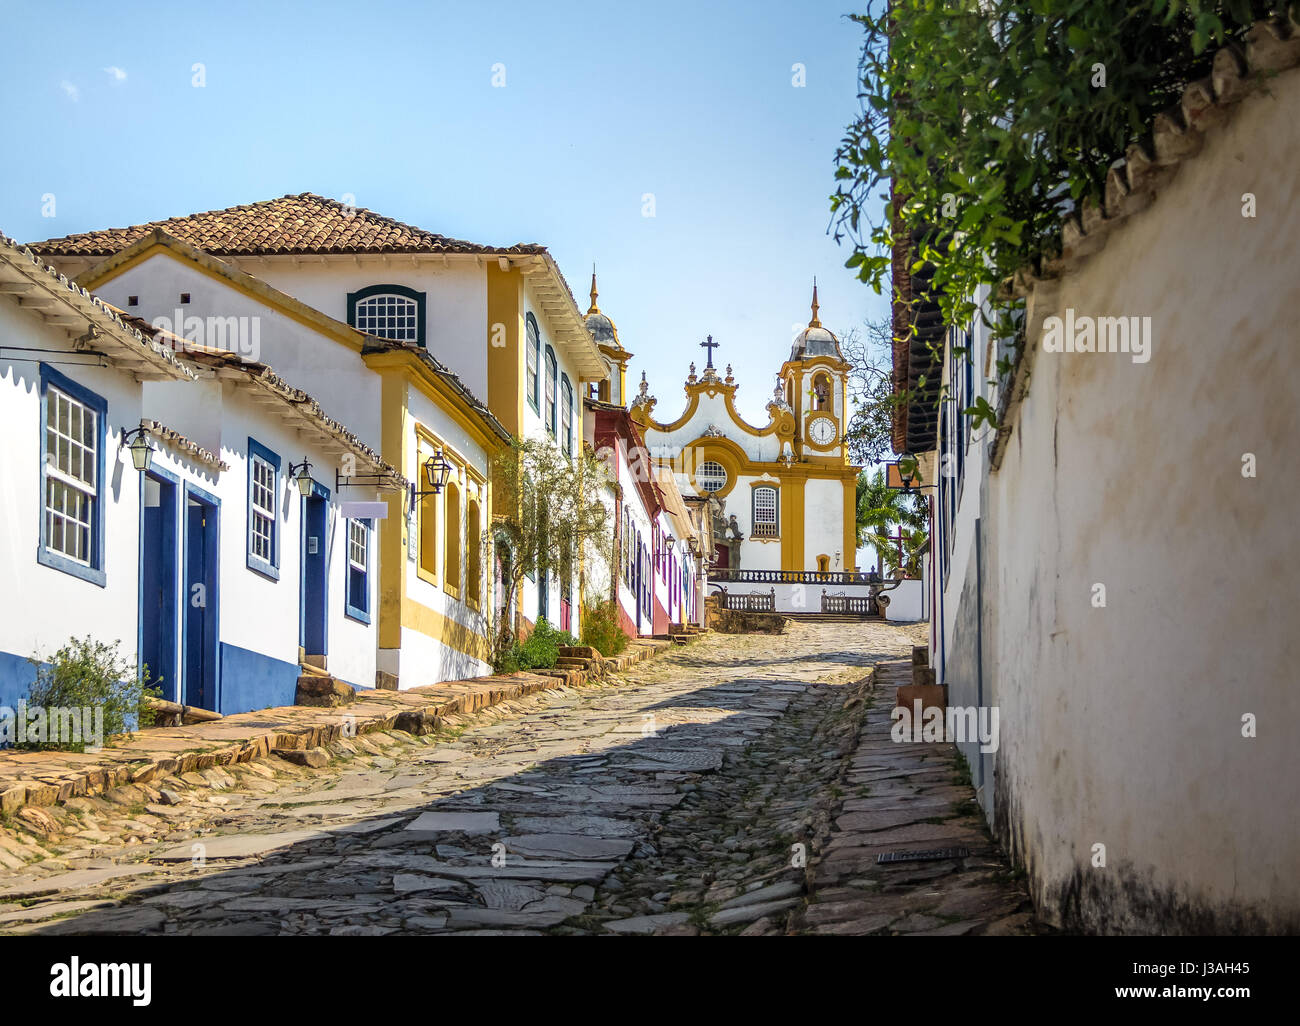 Maisons coloniales colorées et église de Santo Antonio - Tiradentes, Minas Gerais, Brésil Banque D'Images